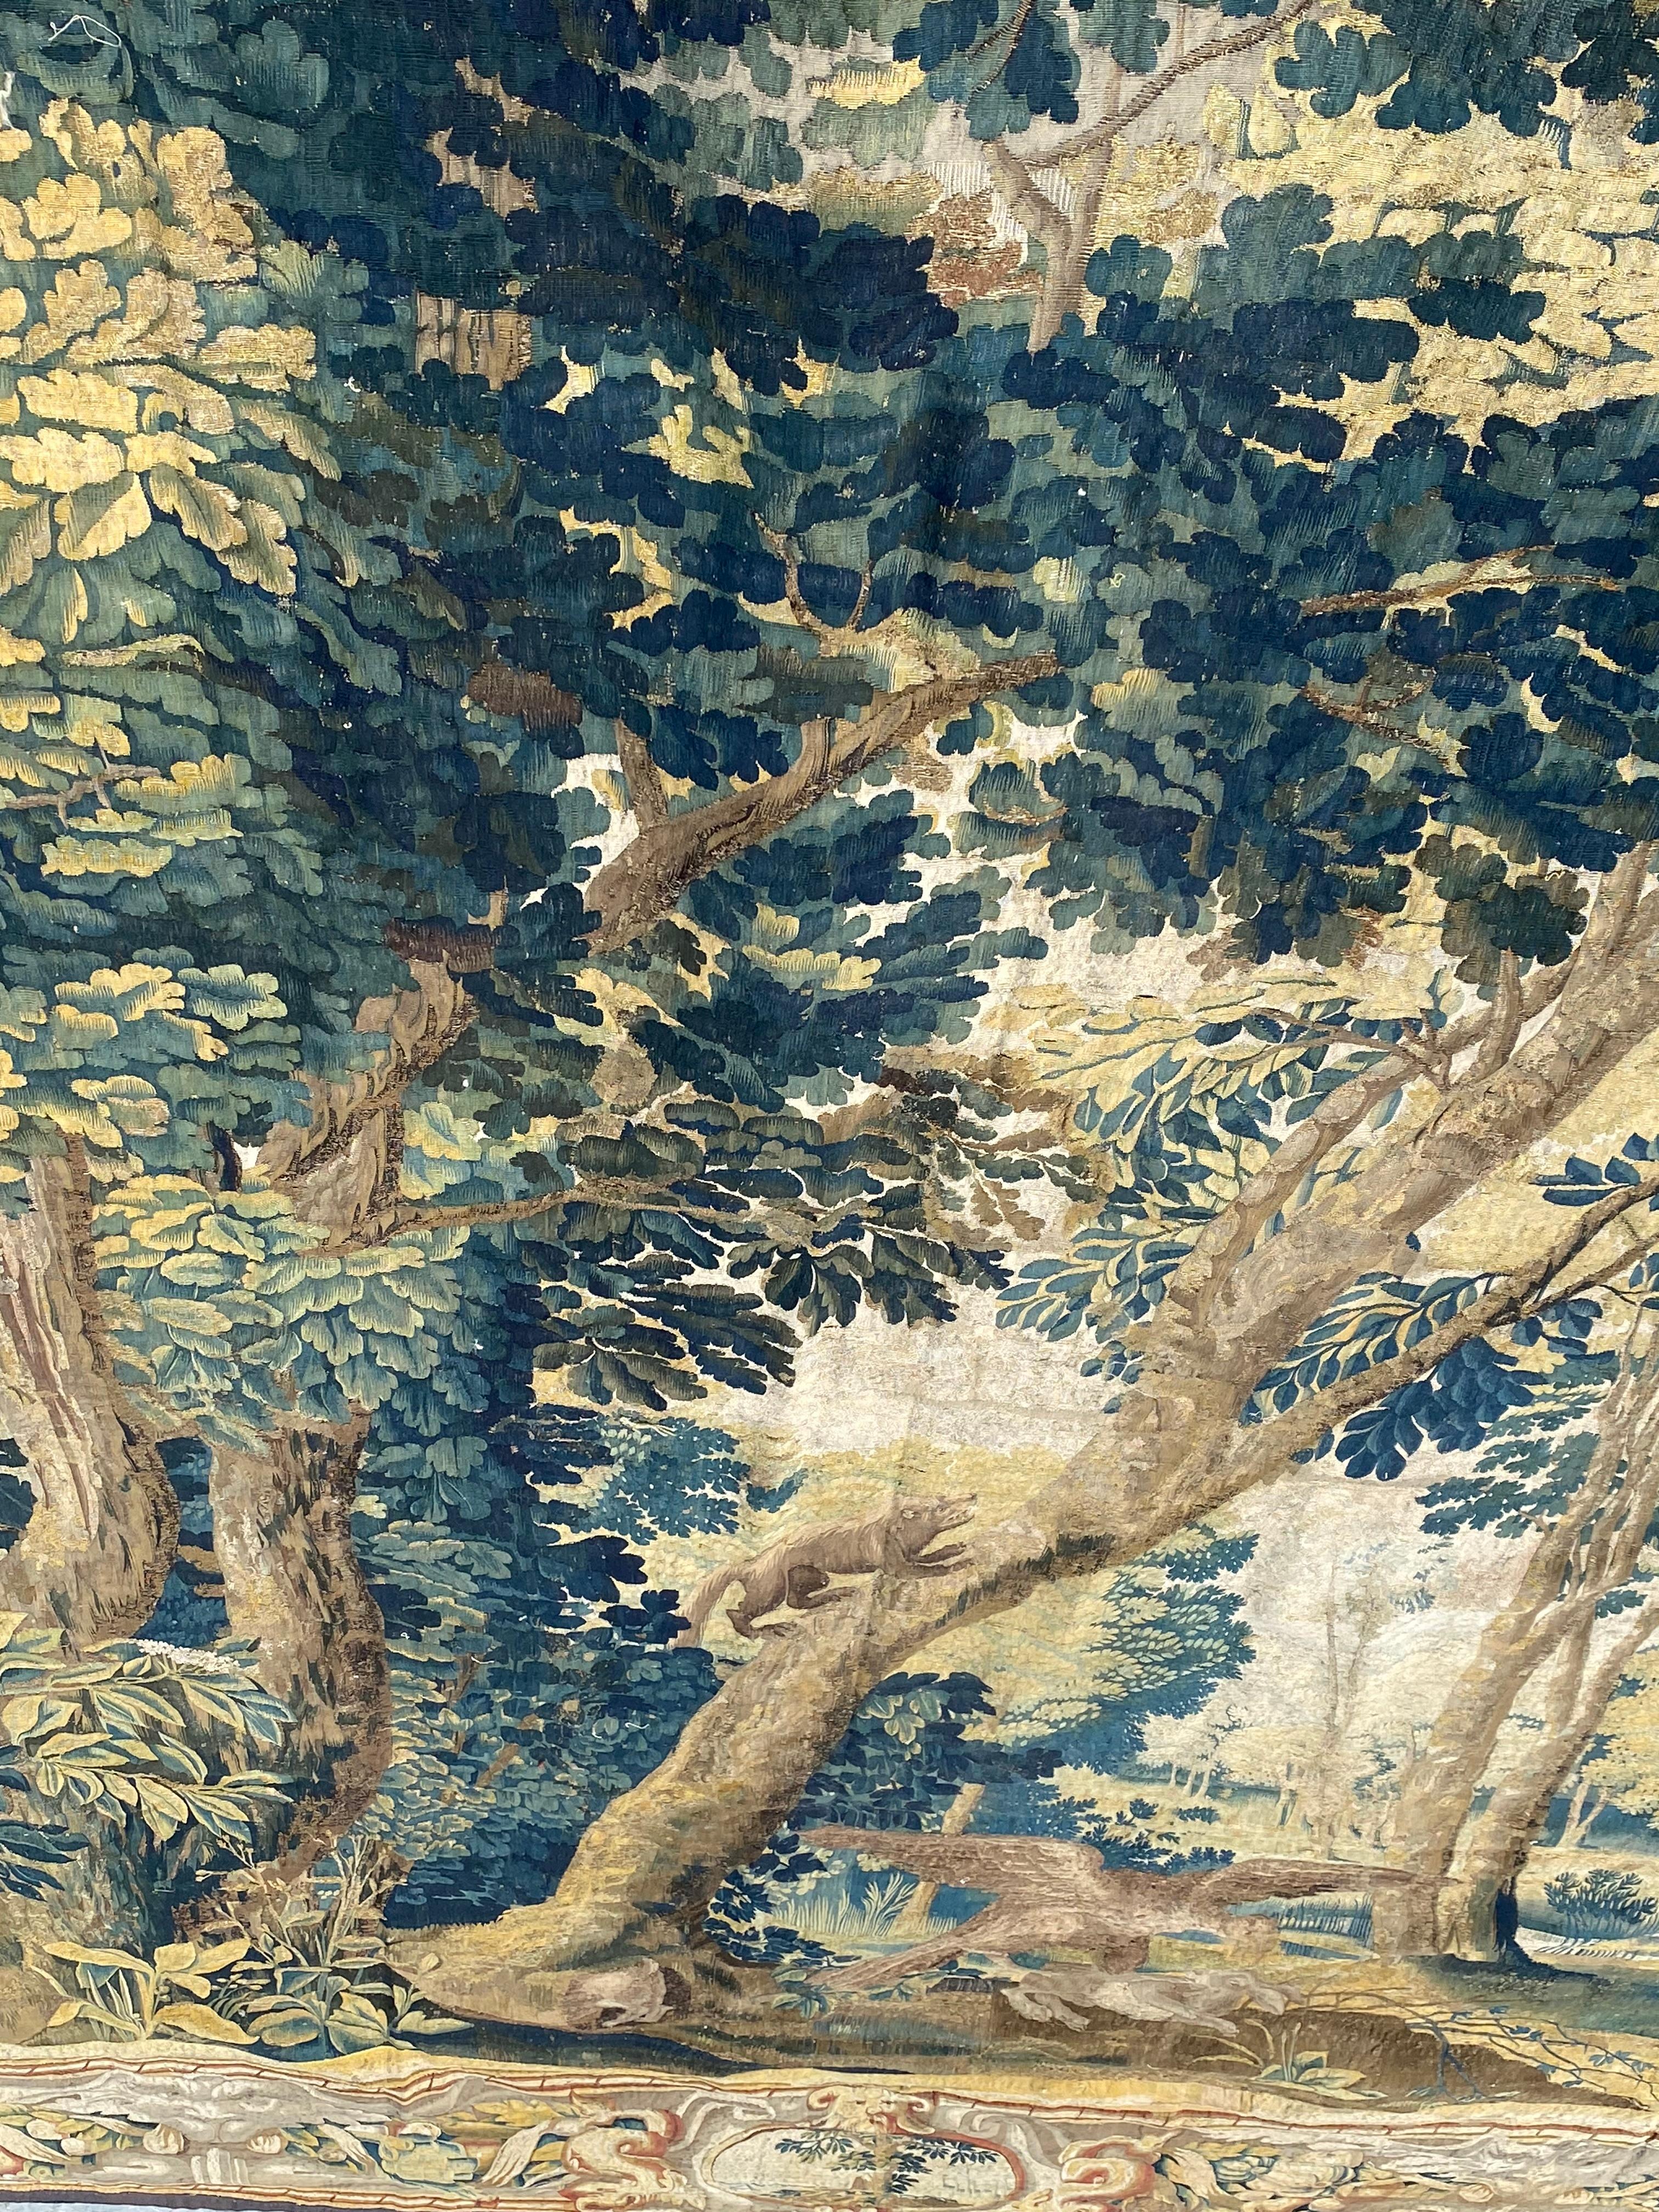 Antique Late 17th Century Antique Franco-Flemish Verdure Landscape Tapestry For Sale 7